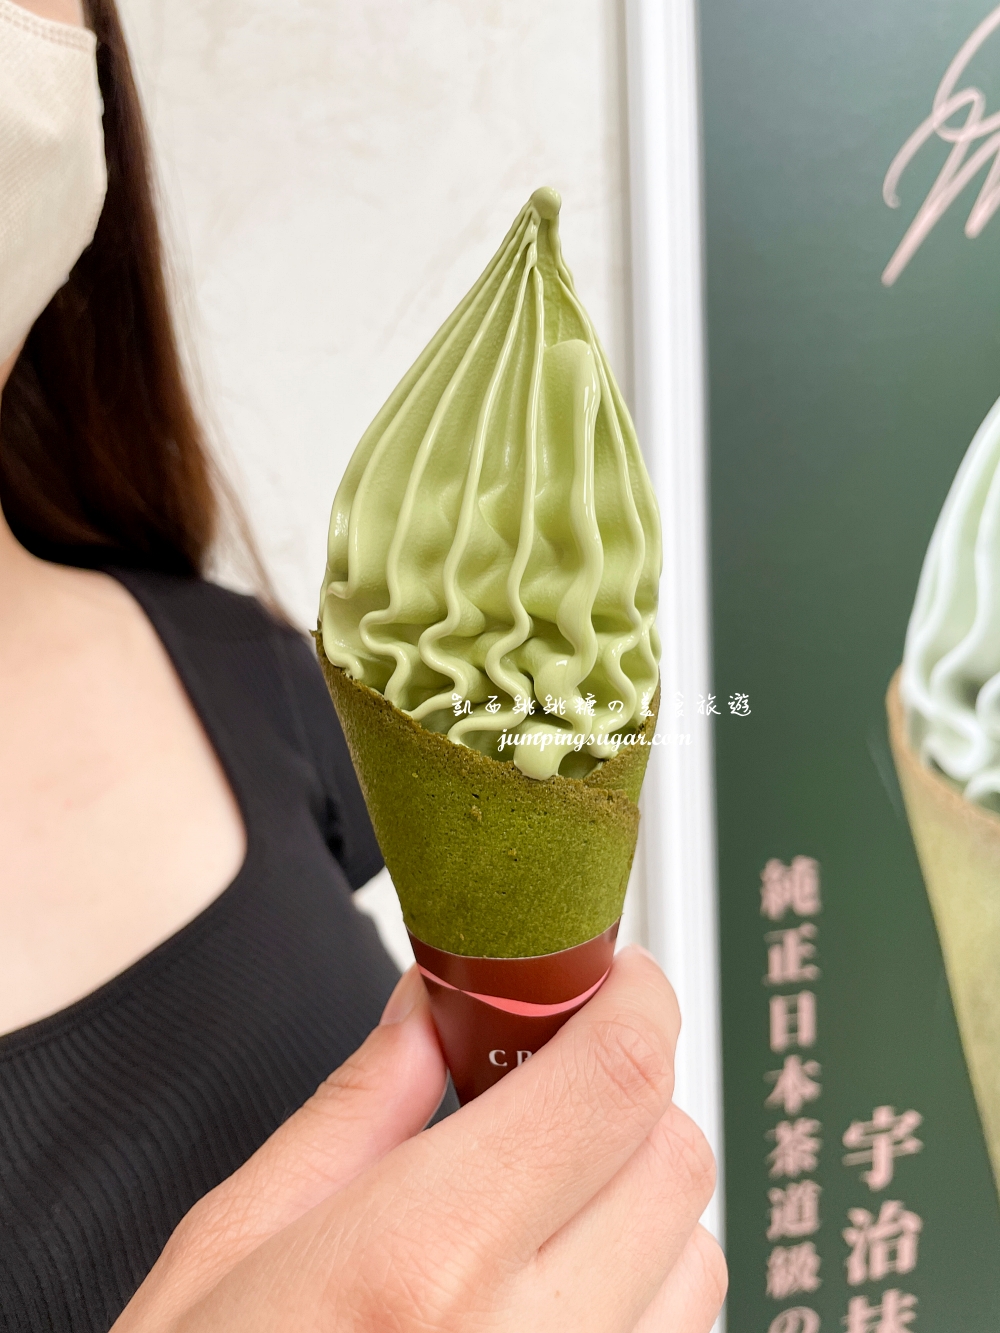 中山站CREMIA冰淇淋，來自北海道神級冰淇淋 ! 台北中山區美食推薦（菜單價錢）